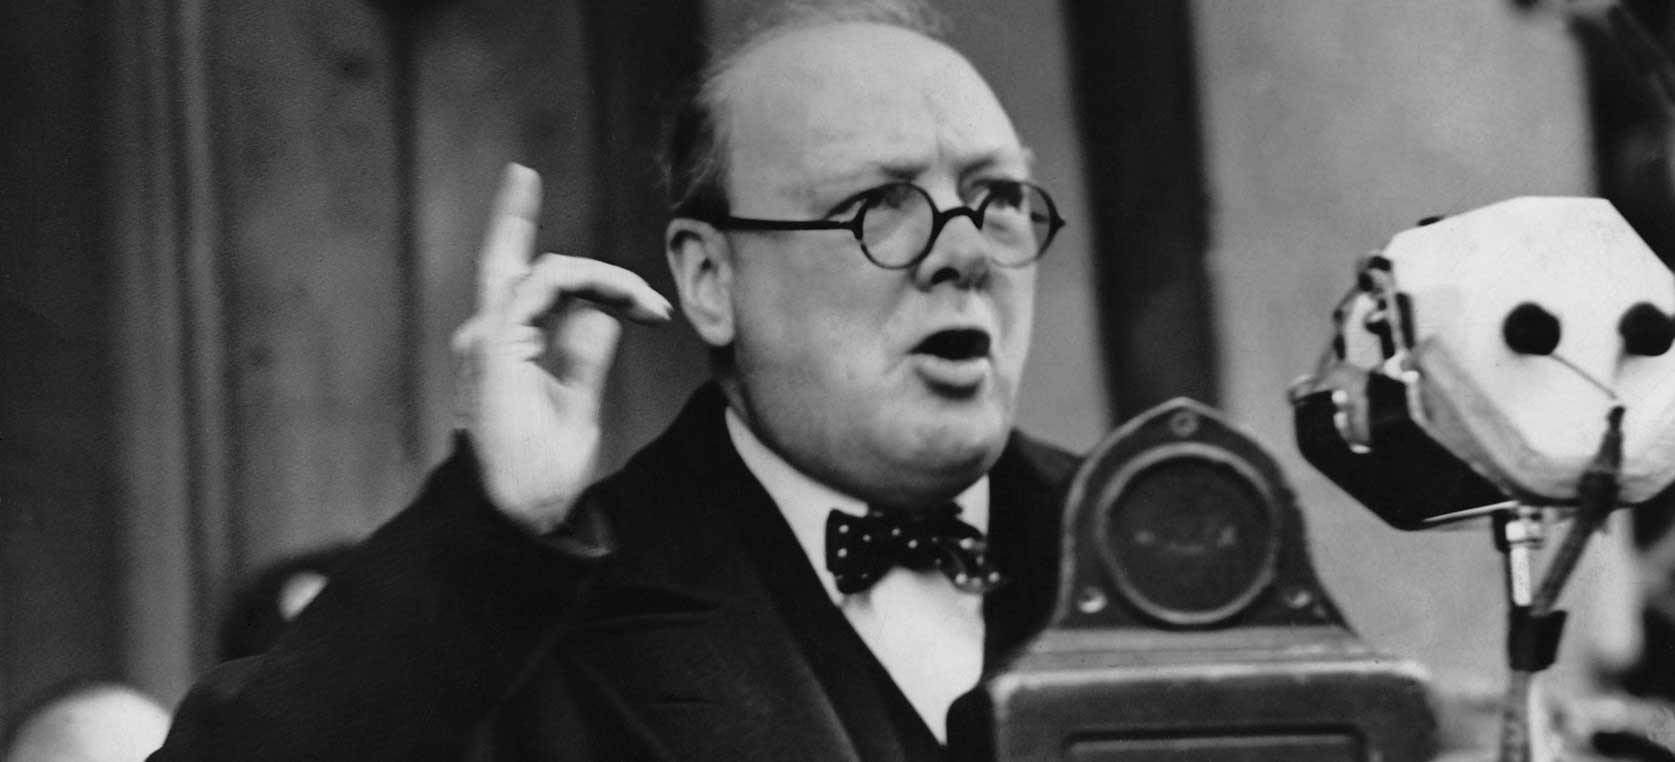 İngiltere'de Churchill tartışması: Kahraman mı, zalim mi?